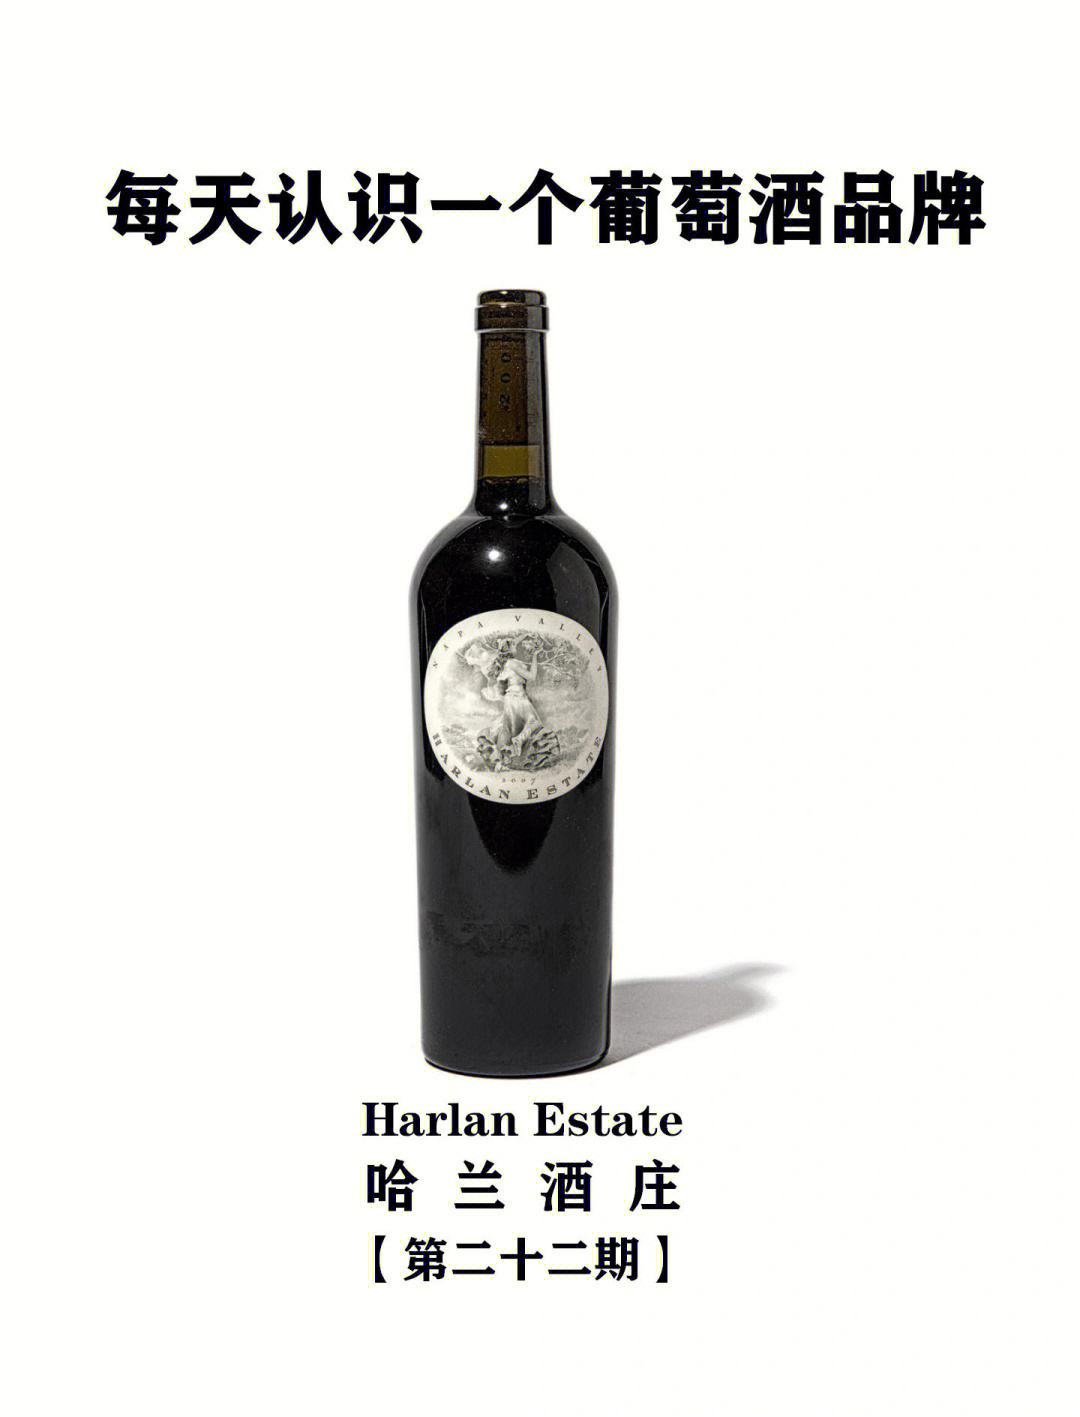 每天认识一个葡萄酒品牌丨哈兰酒庄harlan